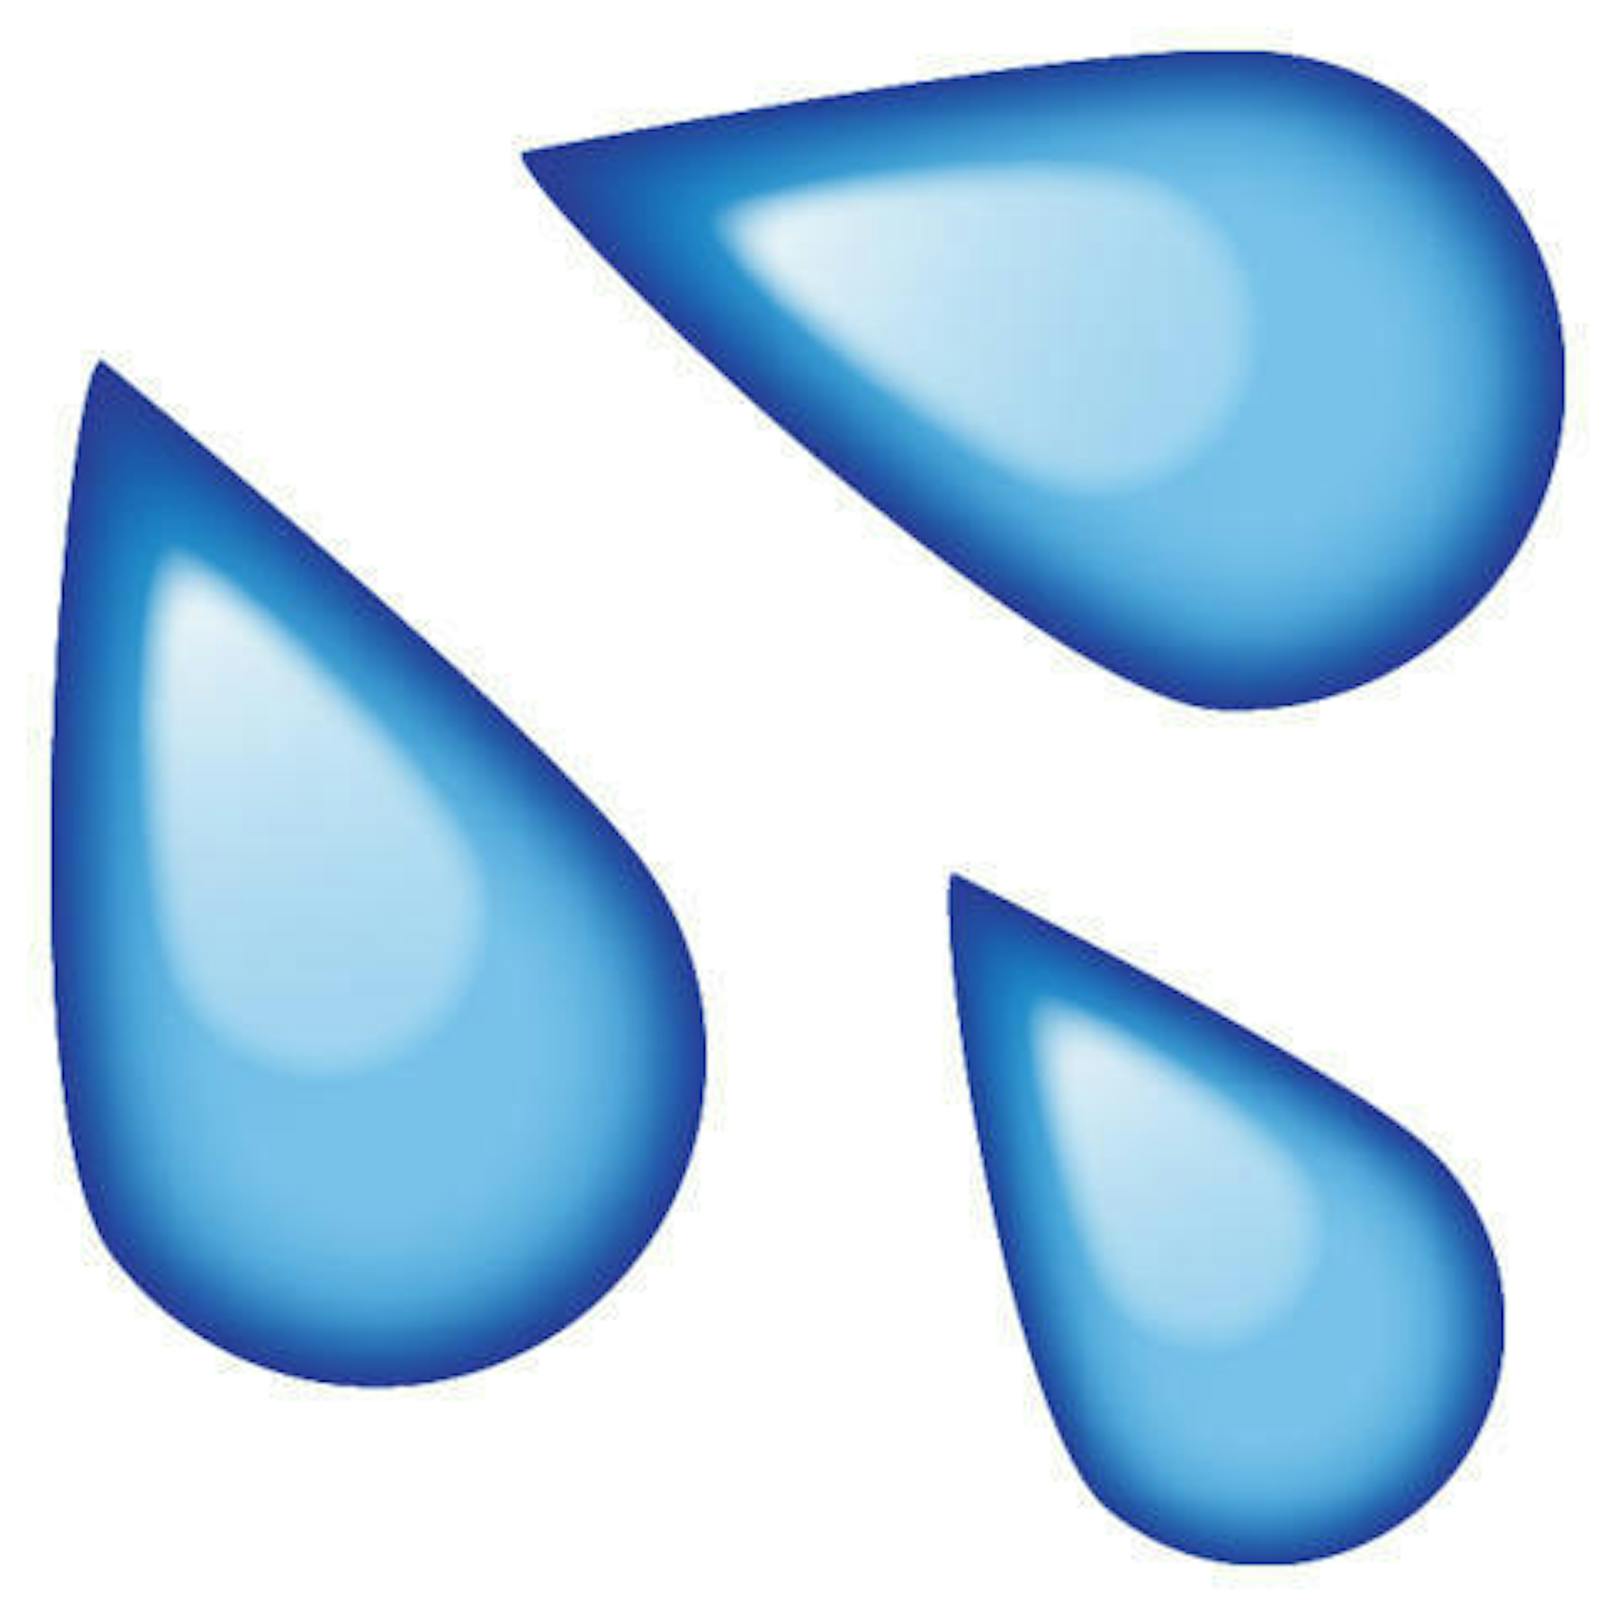 Laut der Studie sind auch die Wassertropfen nicht von schlechten Eltern. Wofür genau dieses Emoji Verwendung findet, bleibt Ihnen überlassen. Kleiner Tipp für alle, die an Heuschnupfen leiden: Lasst die Tropfen los.